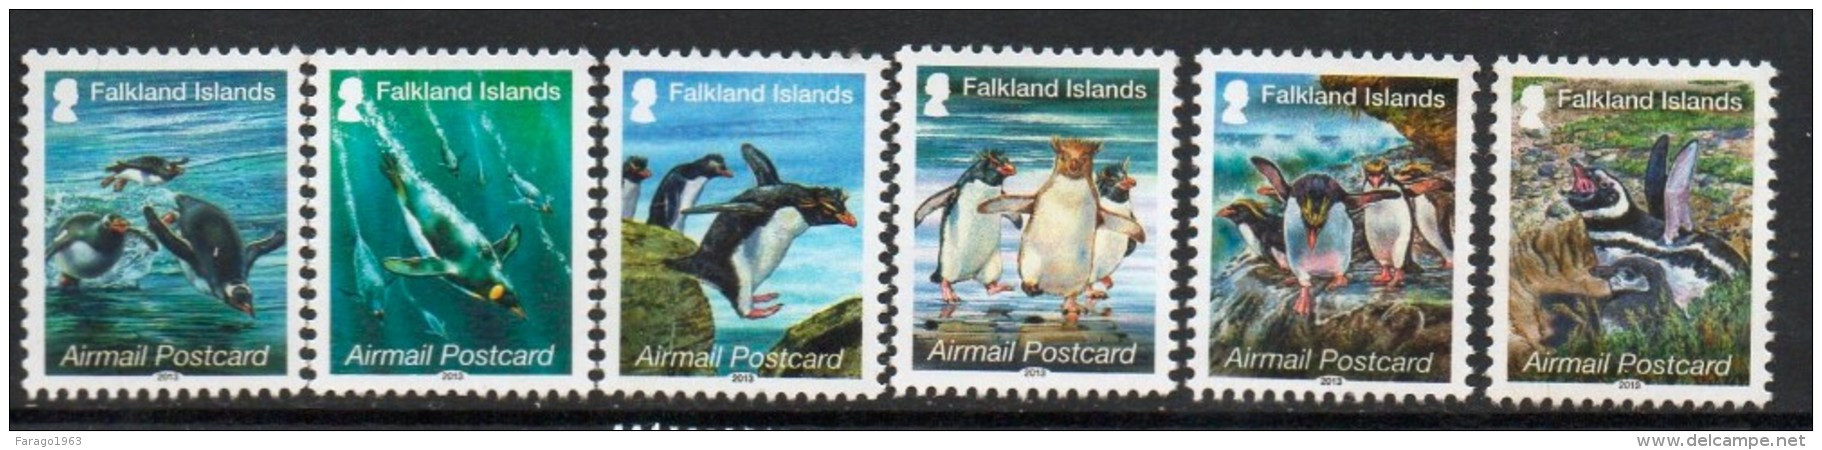 2013 Falkland Islands Penguins Airmails Complete Set Of 6 MNH - Falklandeilanden